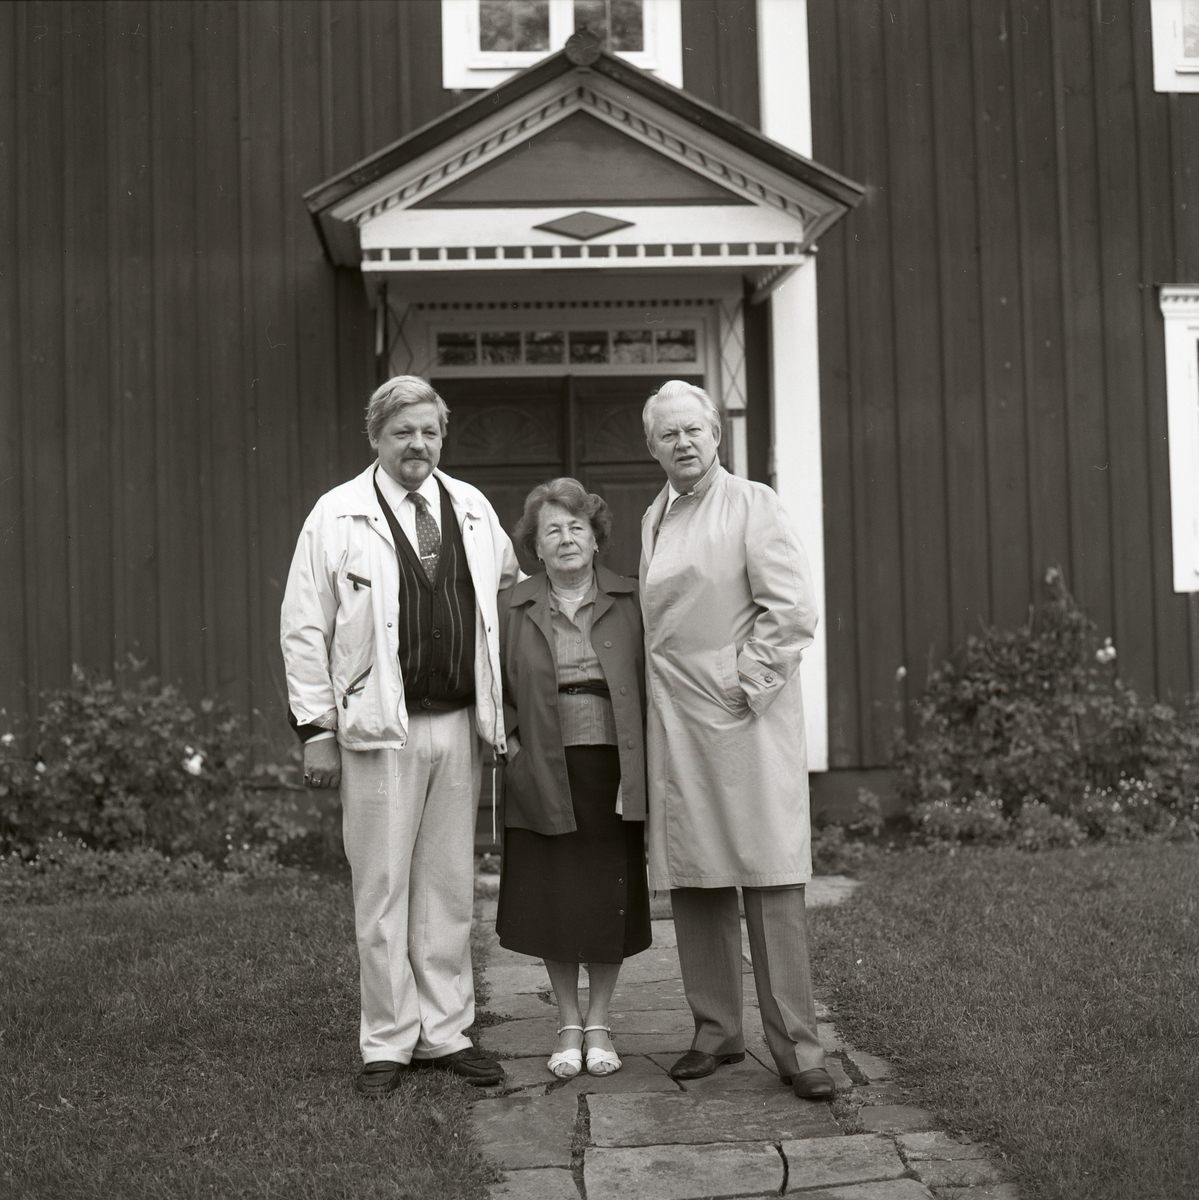 På stenplattorna som går till huset står två män och Adéle står i mitten. Bakom är ett hus med fönster, dörr och ett tak ovanför dörren med snickarglädje. På marken är det gräs och blommor växer mot husväggen. 30 september 1990.